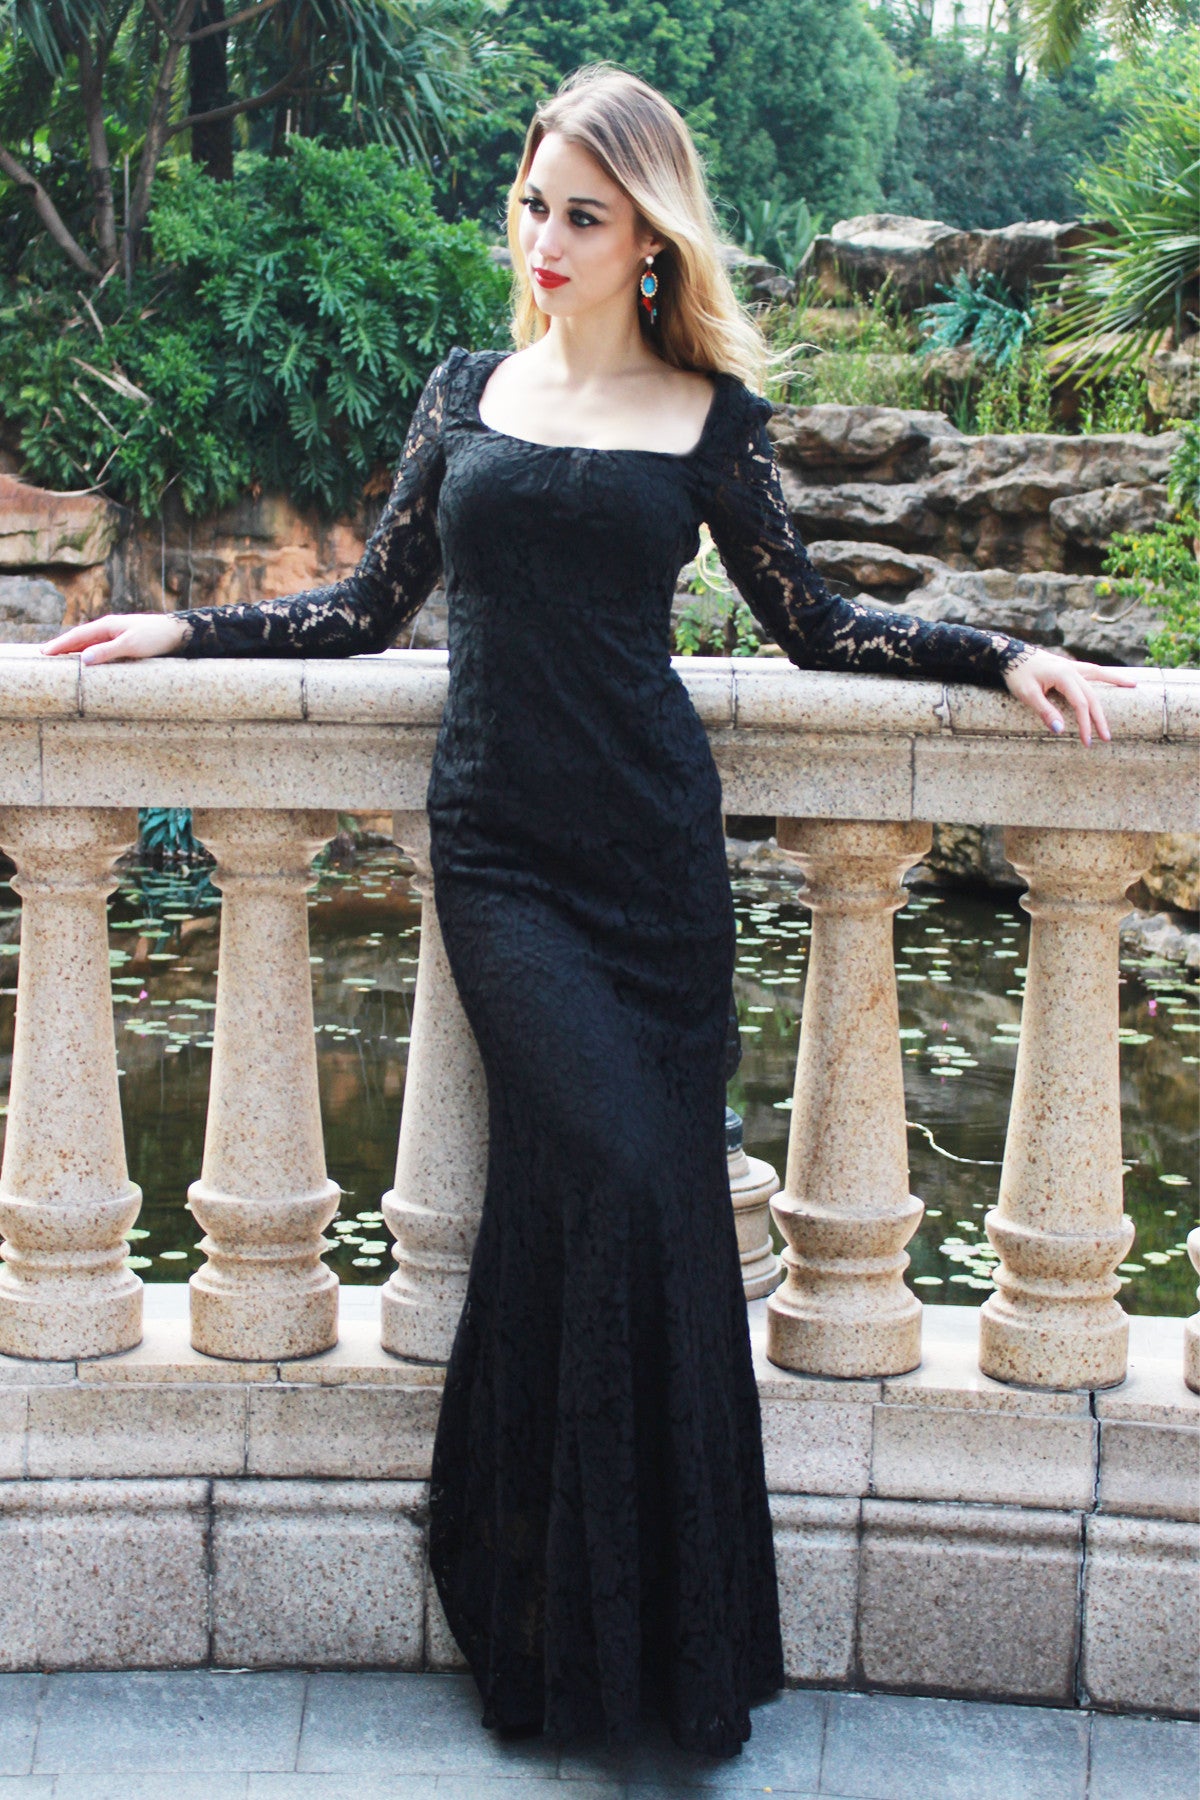 black full length evening dress